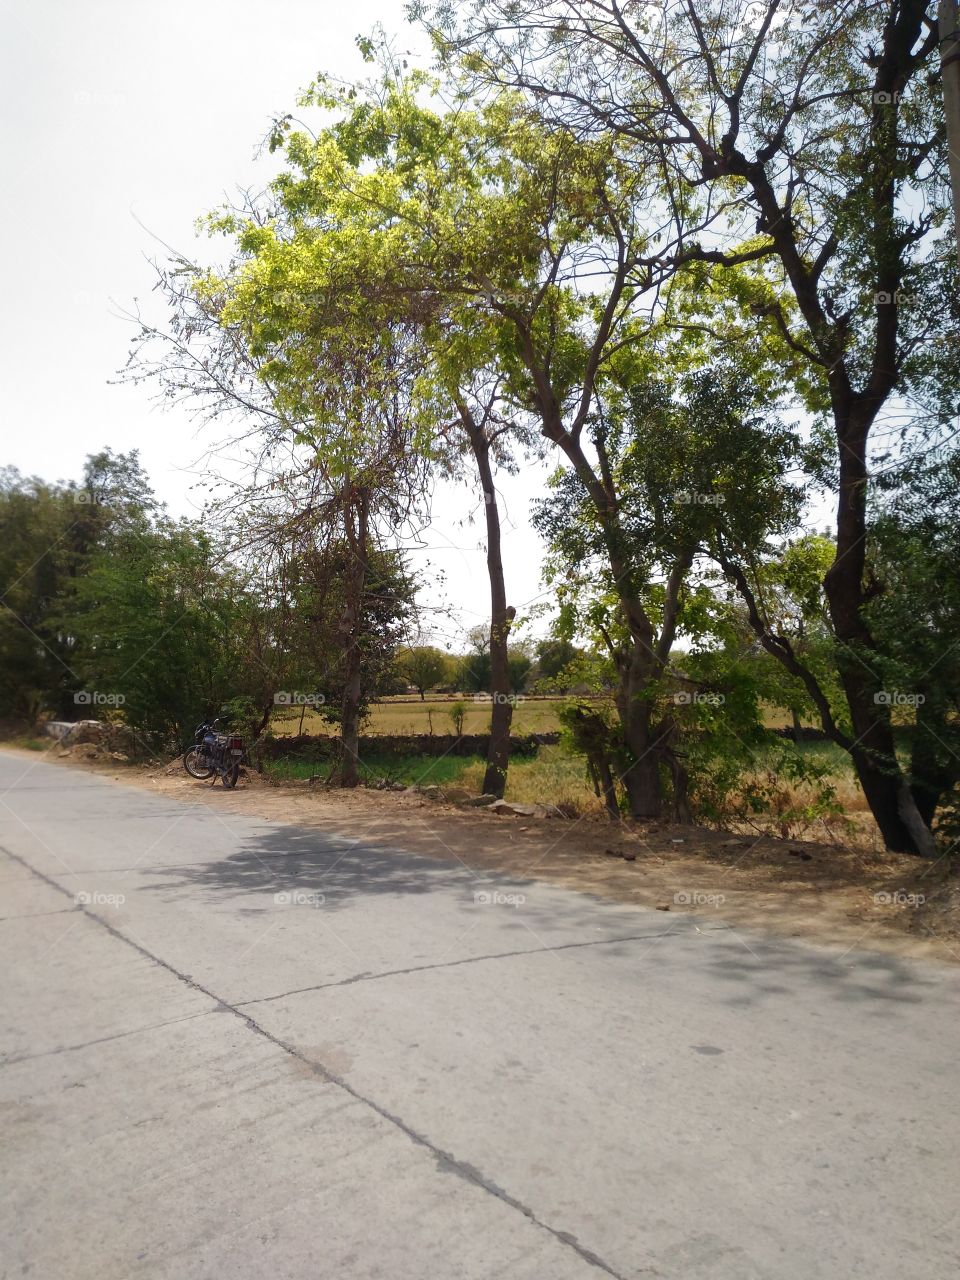 Tree, Landscape, Nature, Road, No Person